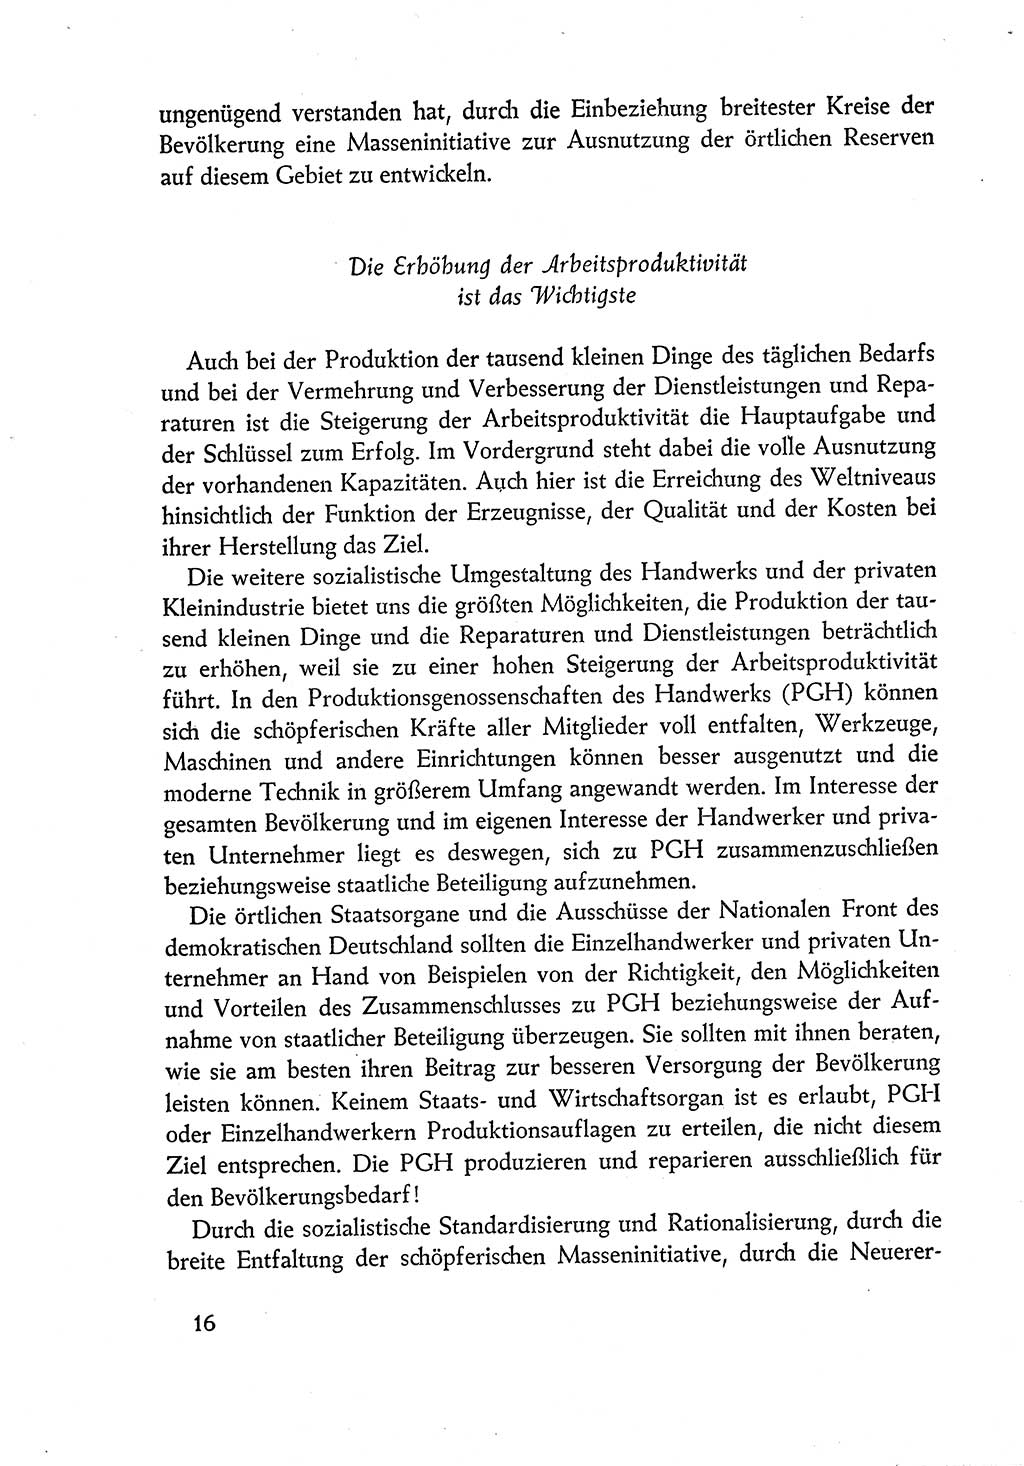 Dokumente der Sozialistischen Einheitspartei Deutschlands (SED) [Deutsche Demokratische Republik (DDR)] 1960-1961, Seite 16 (Dok. SED DDR 1960-1961, S. 16)